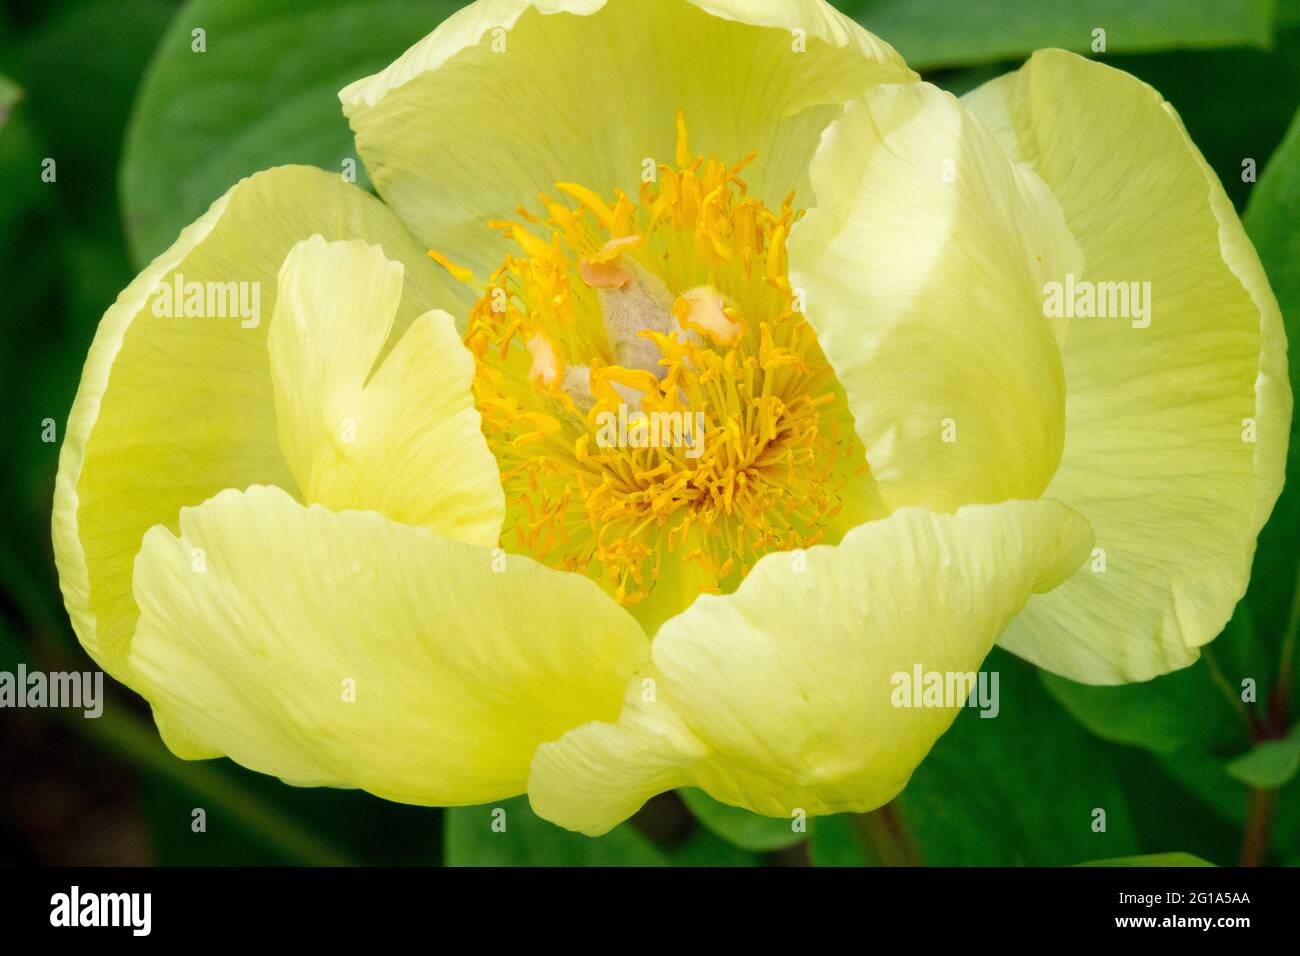 Fiore Peony mlokosewitschii, fiore giallo limone a forma di ciotola con spessorini gialli Foto Stock